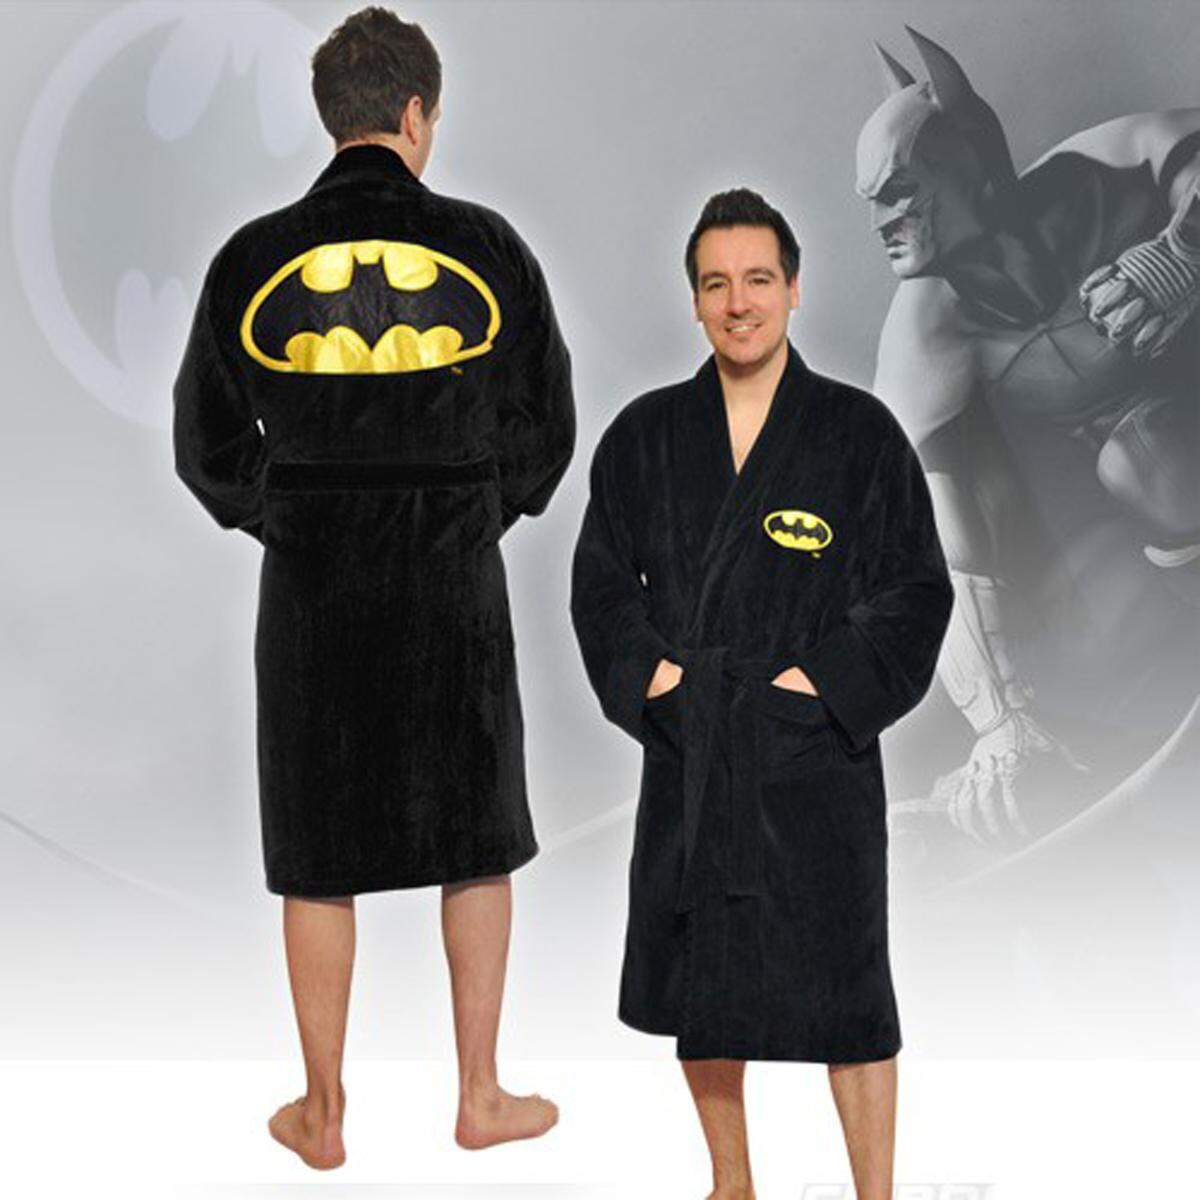 Für Superhelden-Väter sind die Bademäntel mit Batman-, Superman- und Co.-Logo passend, 49,95 Euro.